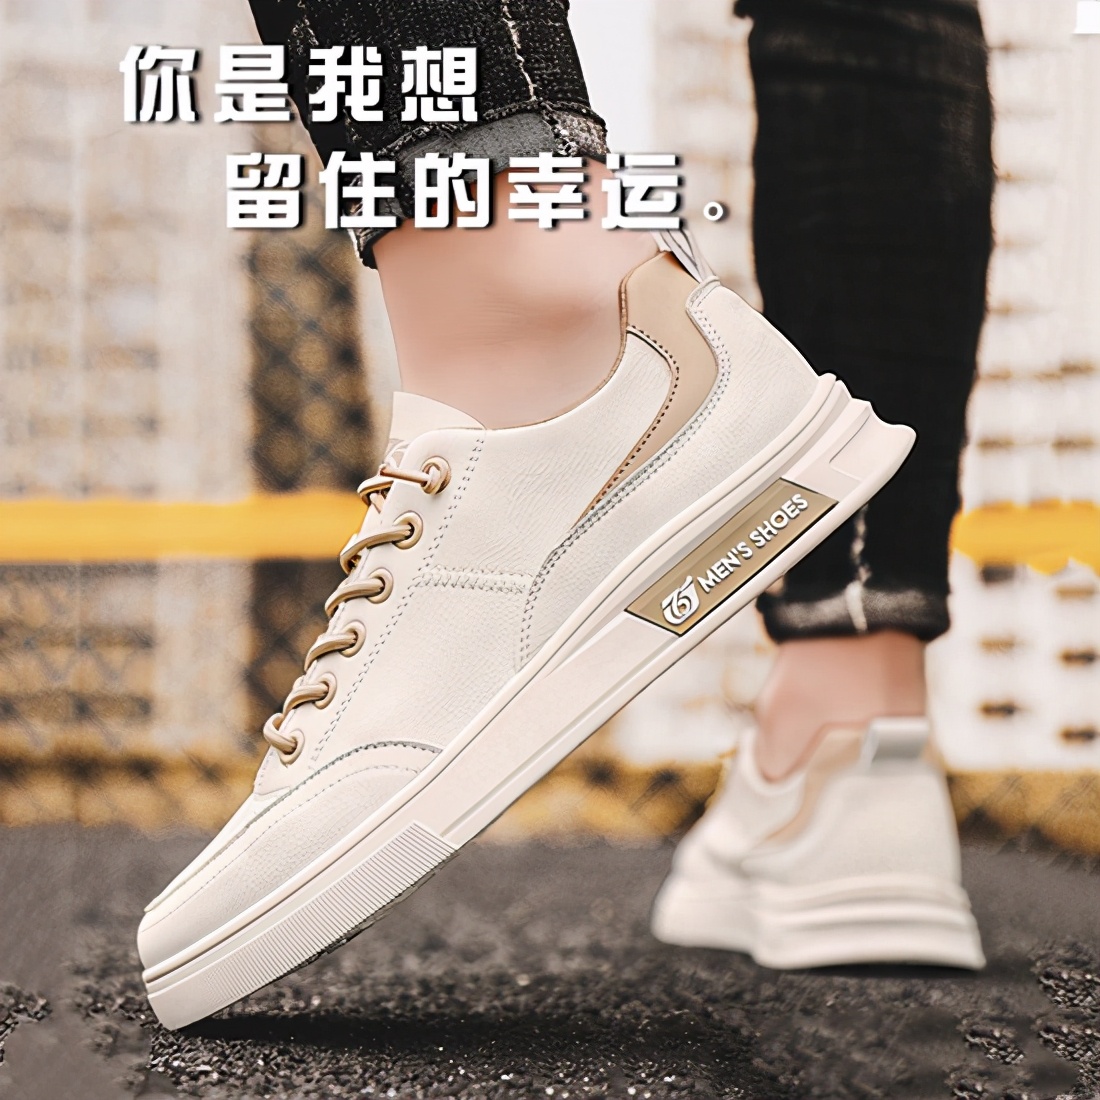 京城印象｜想成为老北京布鞋品牌领头羊需要关注什么